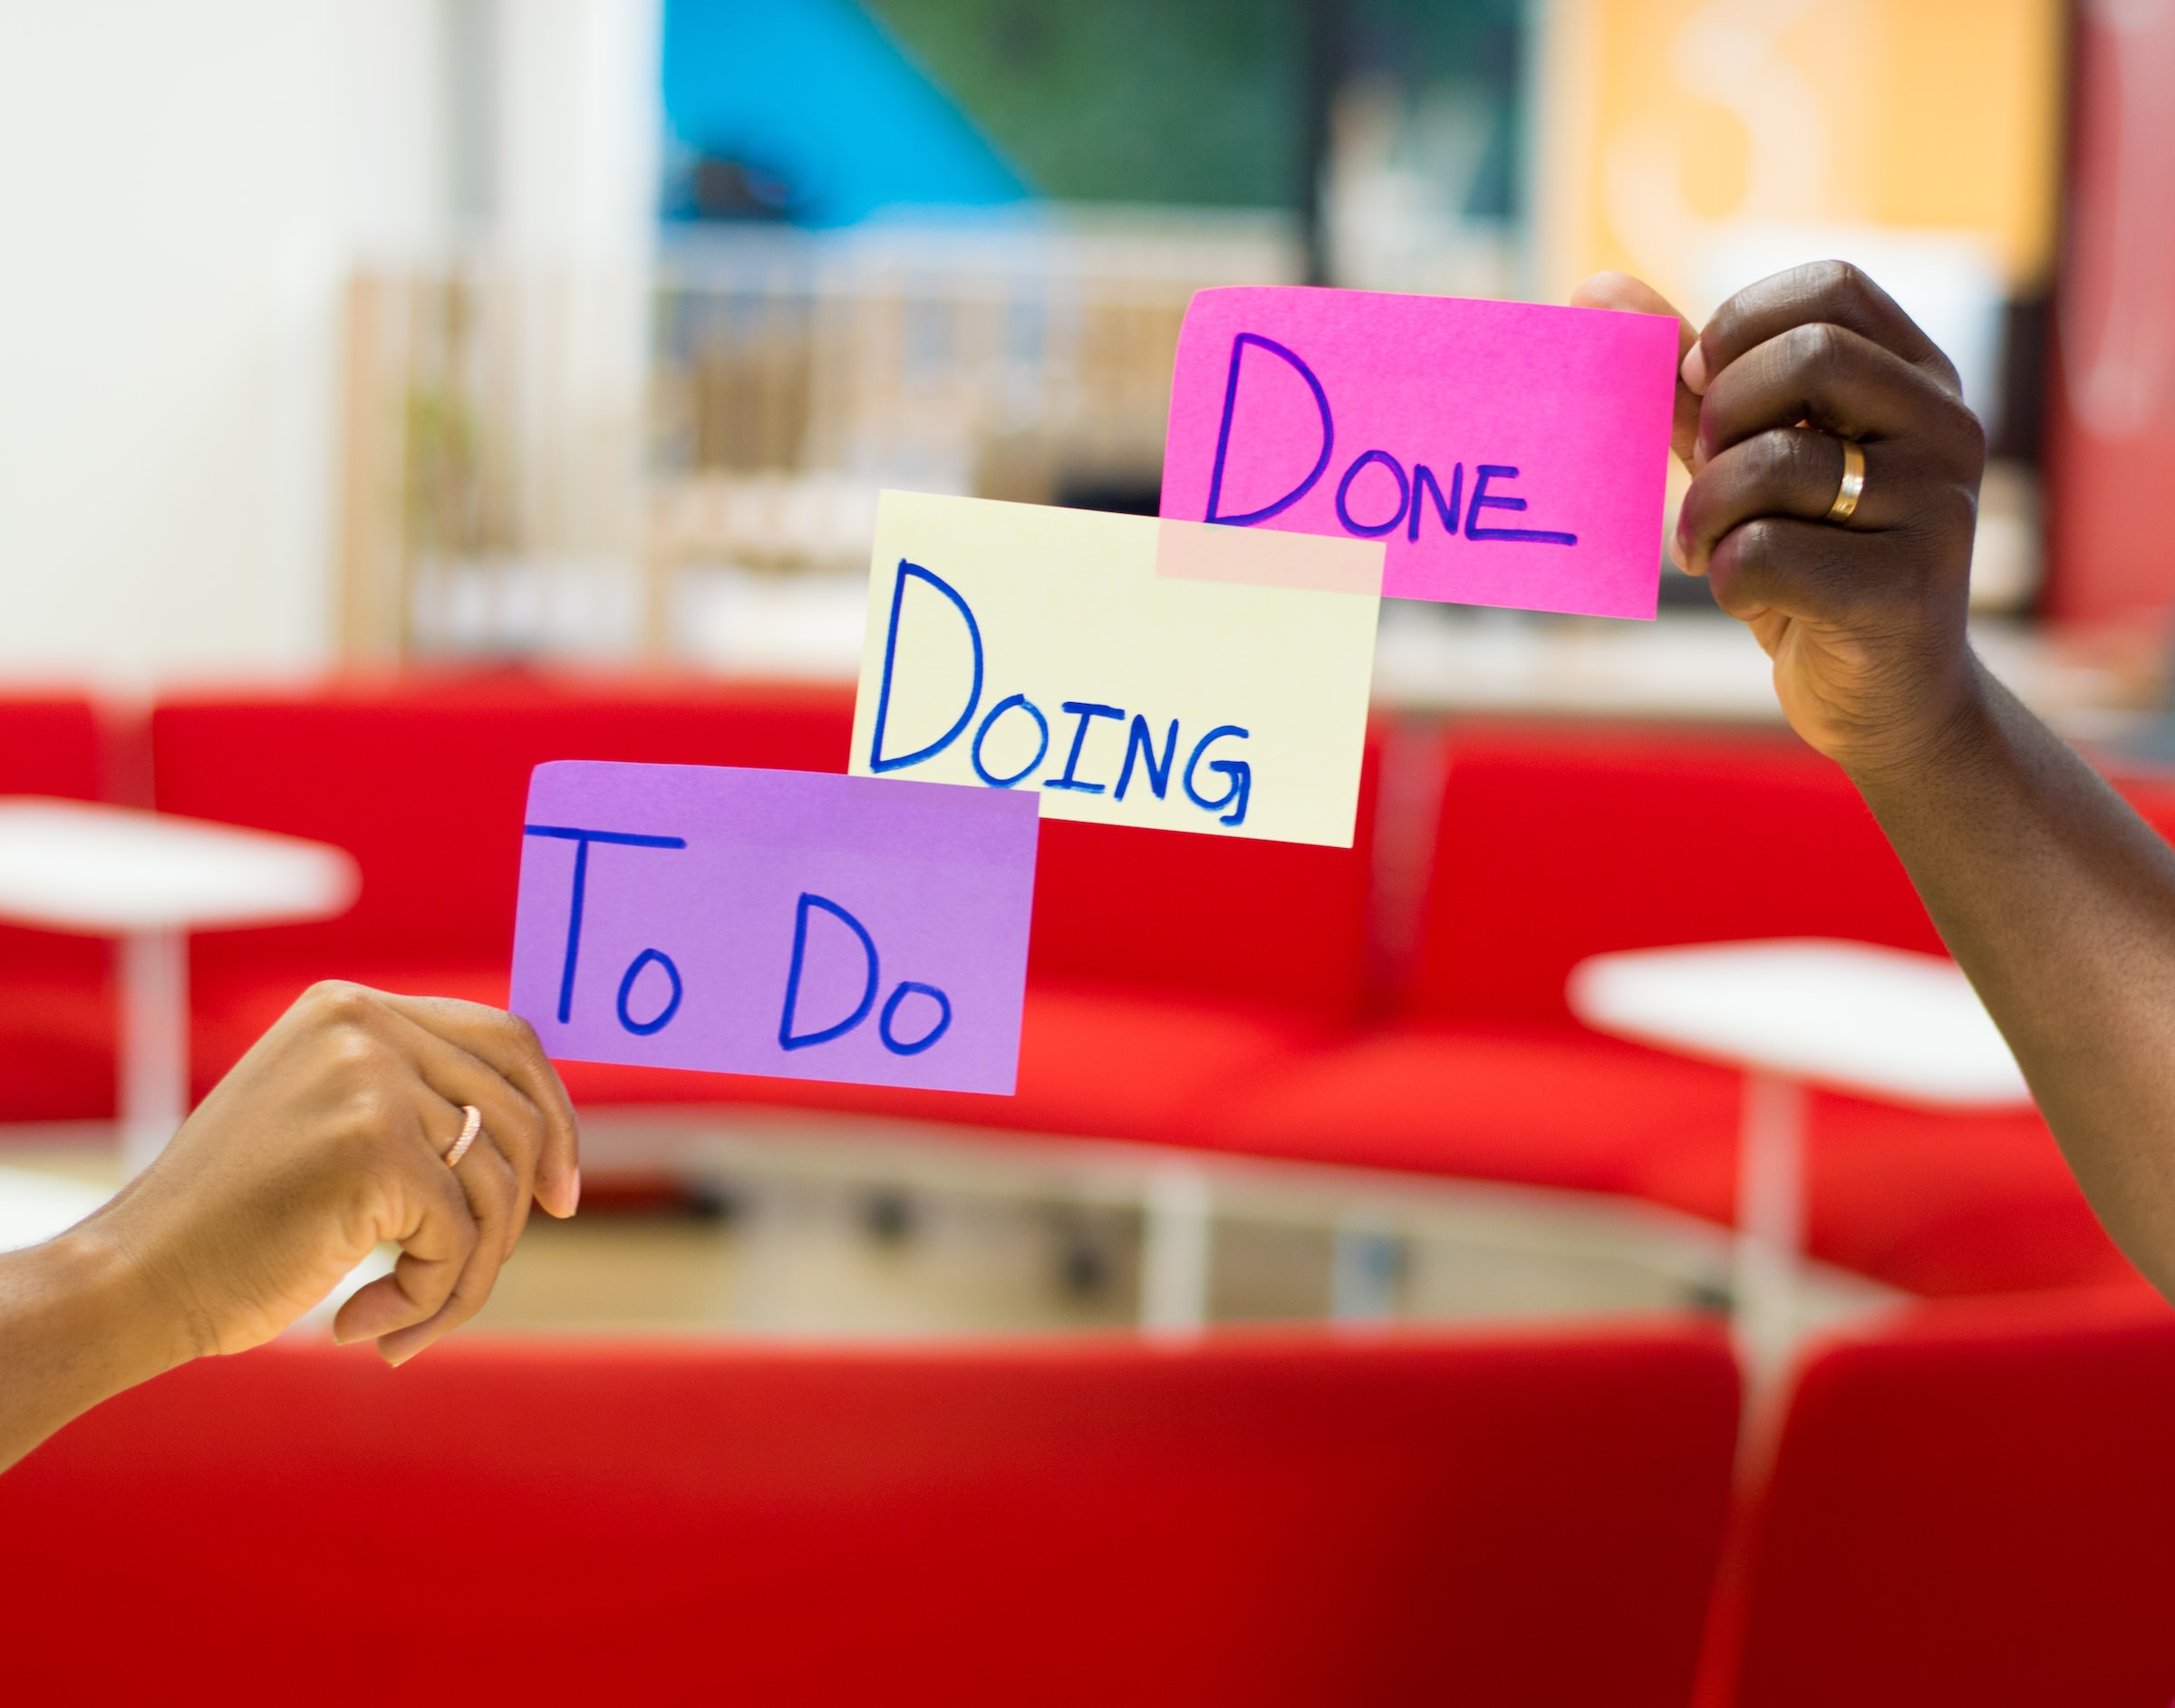 Dos personas muestran tres hojas de papel. En estas hojas esta escrito "To do", "Doing", "Done".